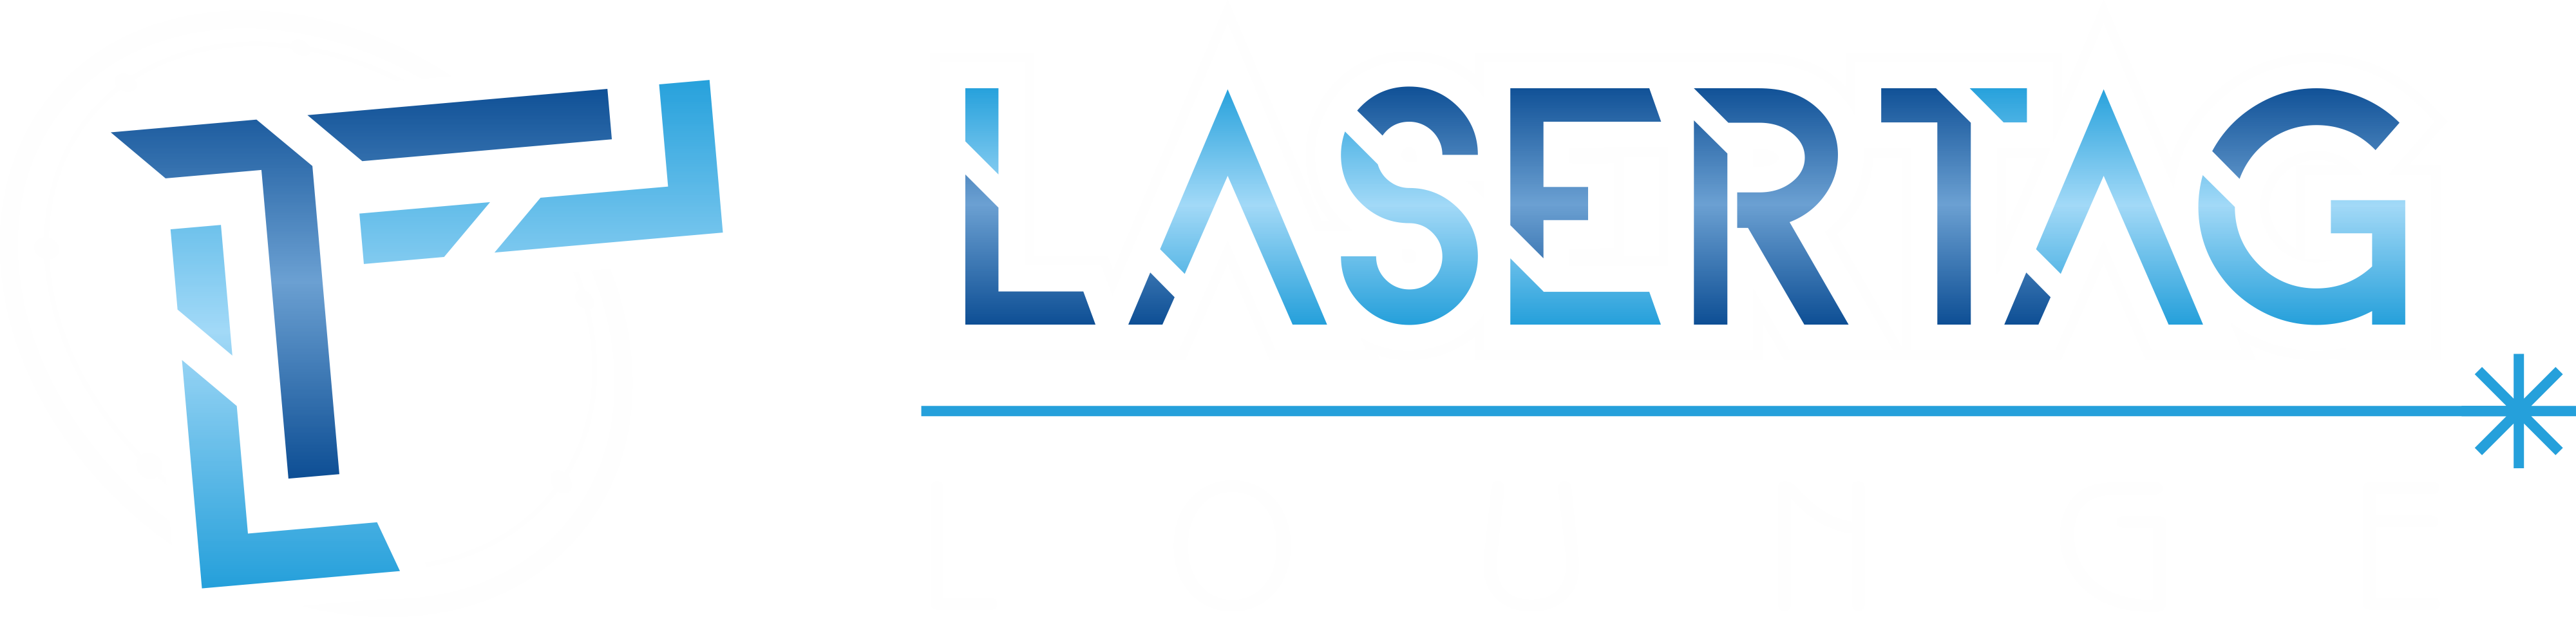 Lasertag & Lounge Leer - Logo